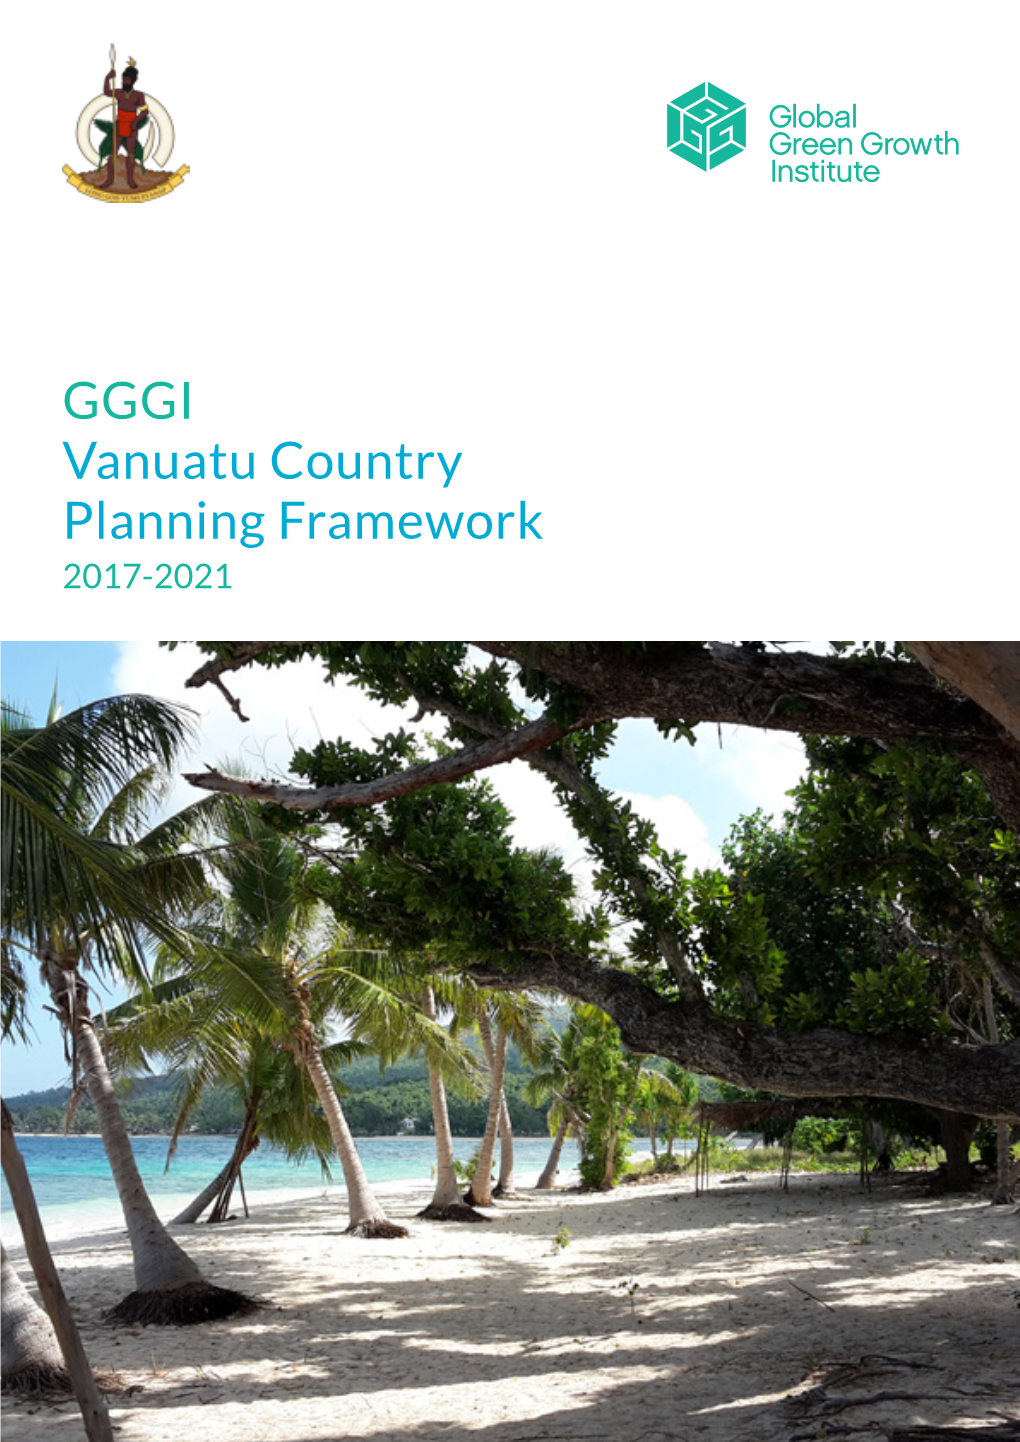 GGGI Vanuatu Country Planning Framework 2017-2021